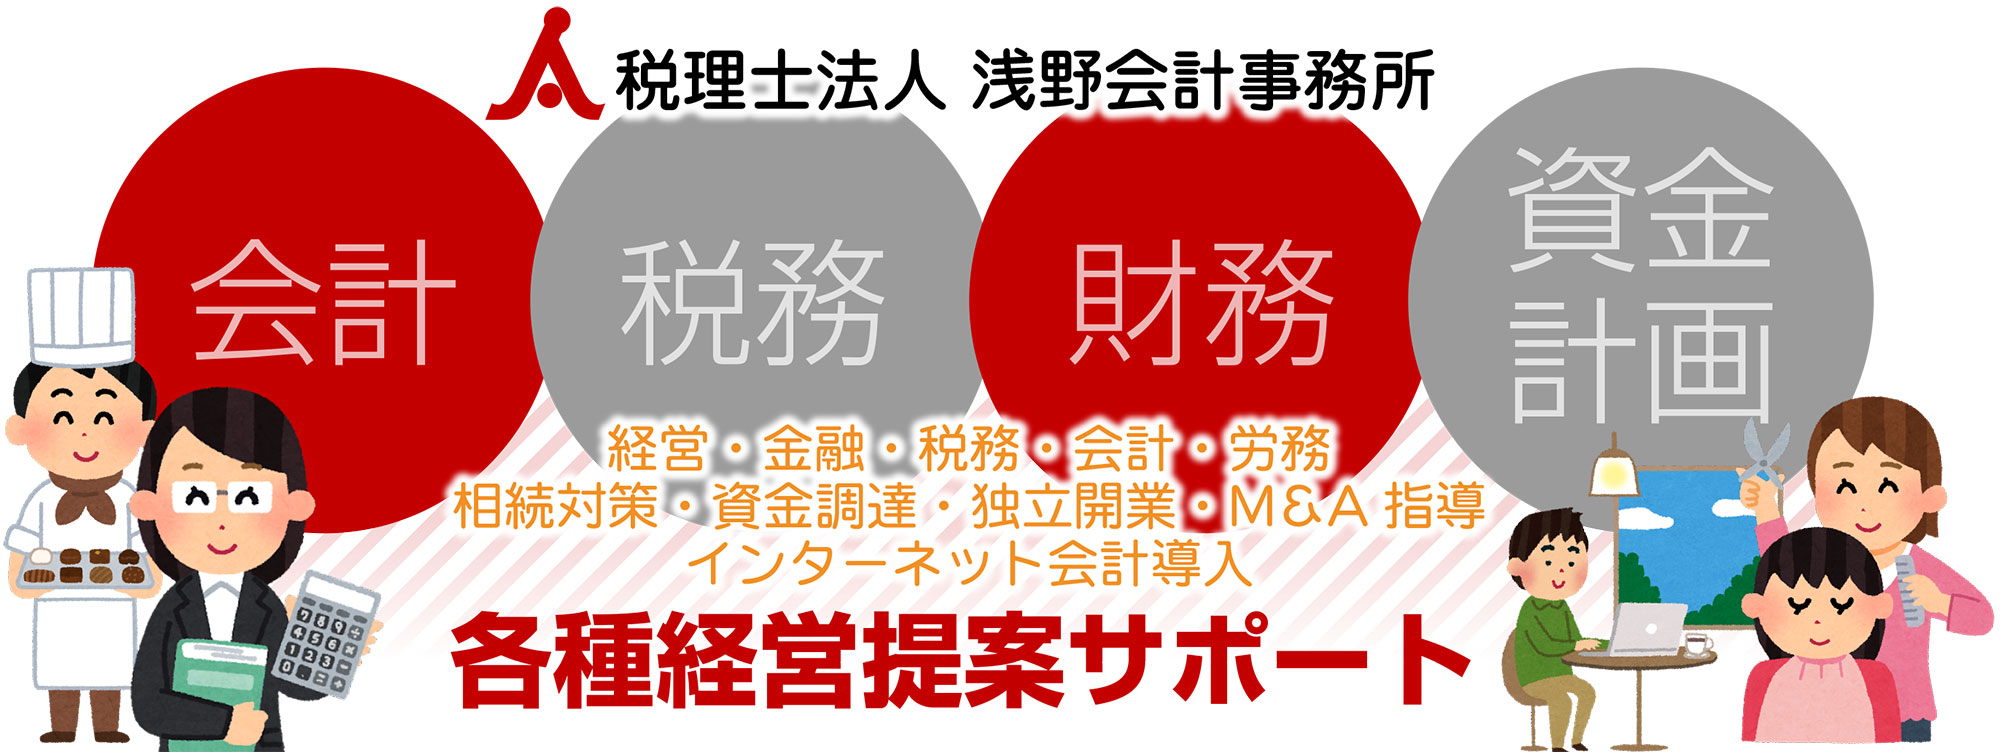 名古屋市/愛知県の税理士法人 浅野会計事務所の各種提案サービス